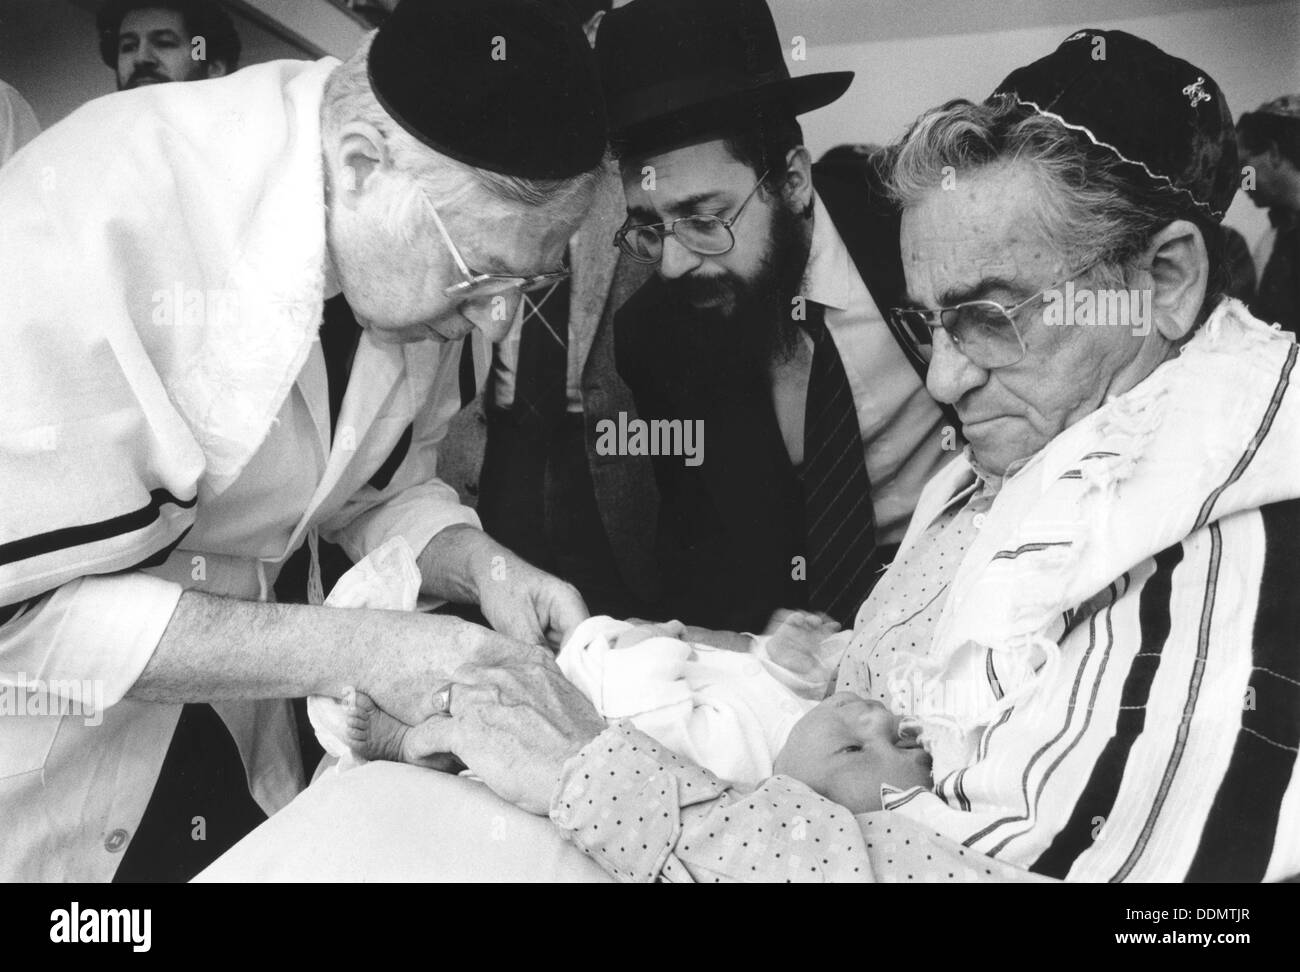 Circoncisione ebraica rituale, 21 luglio 2000. Artista: sconosciuto Foto Stock